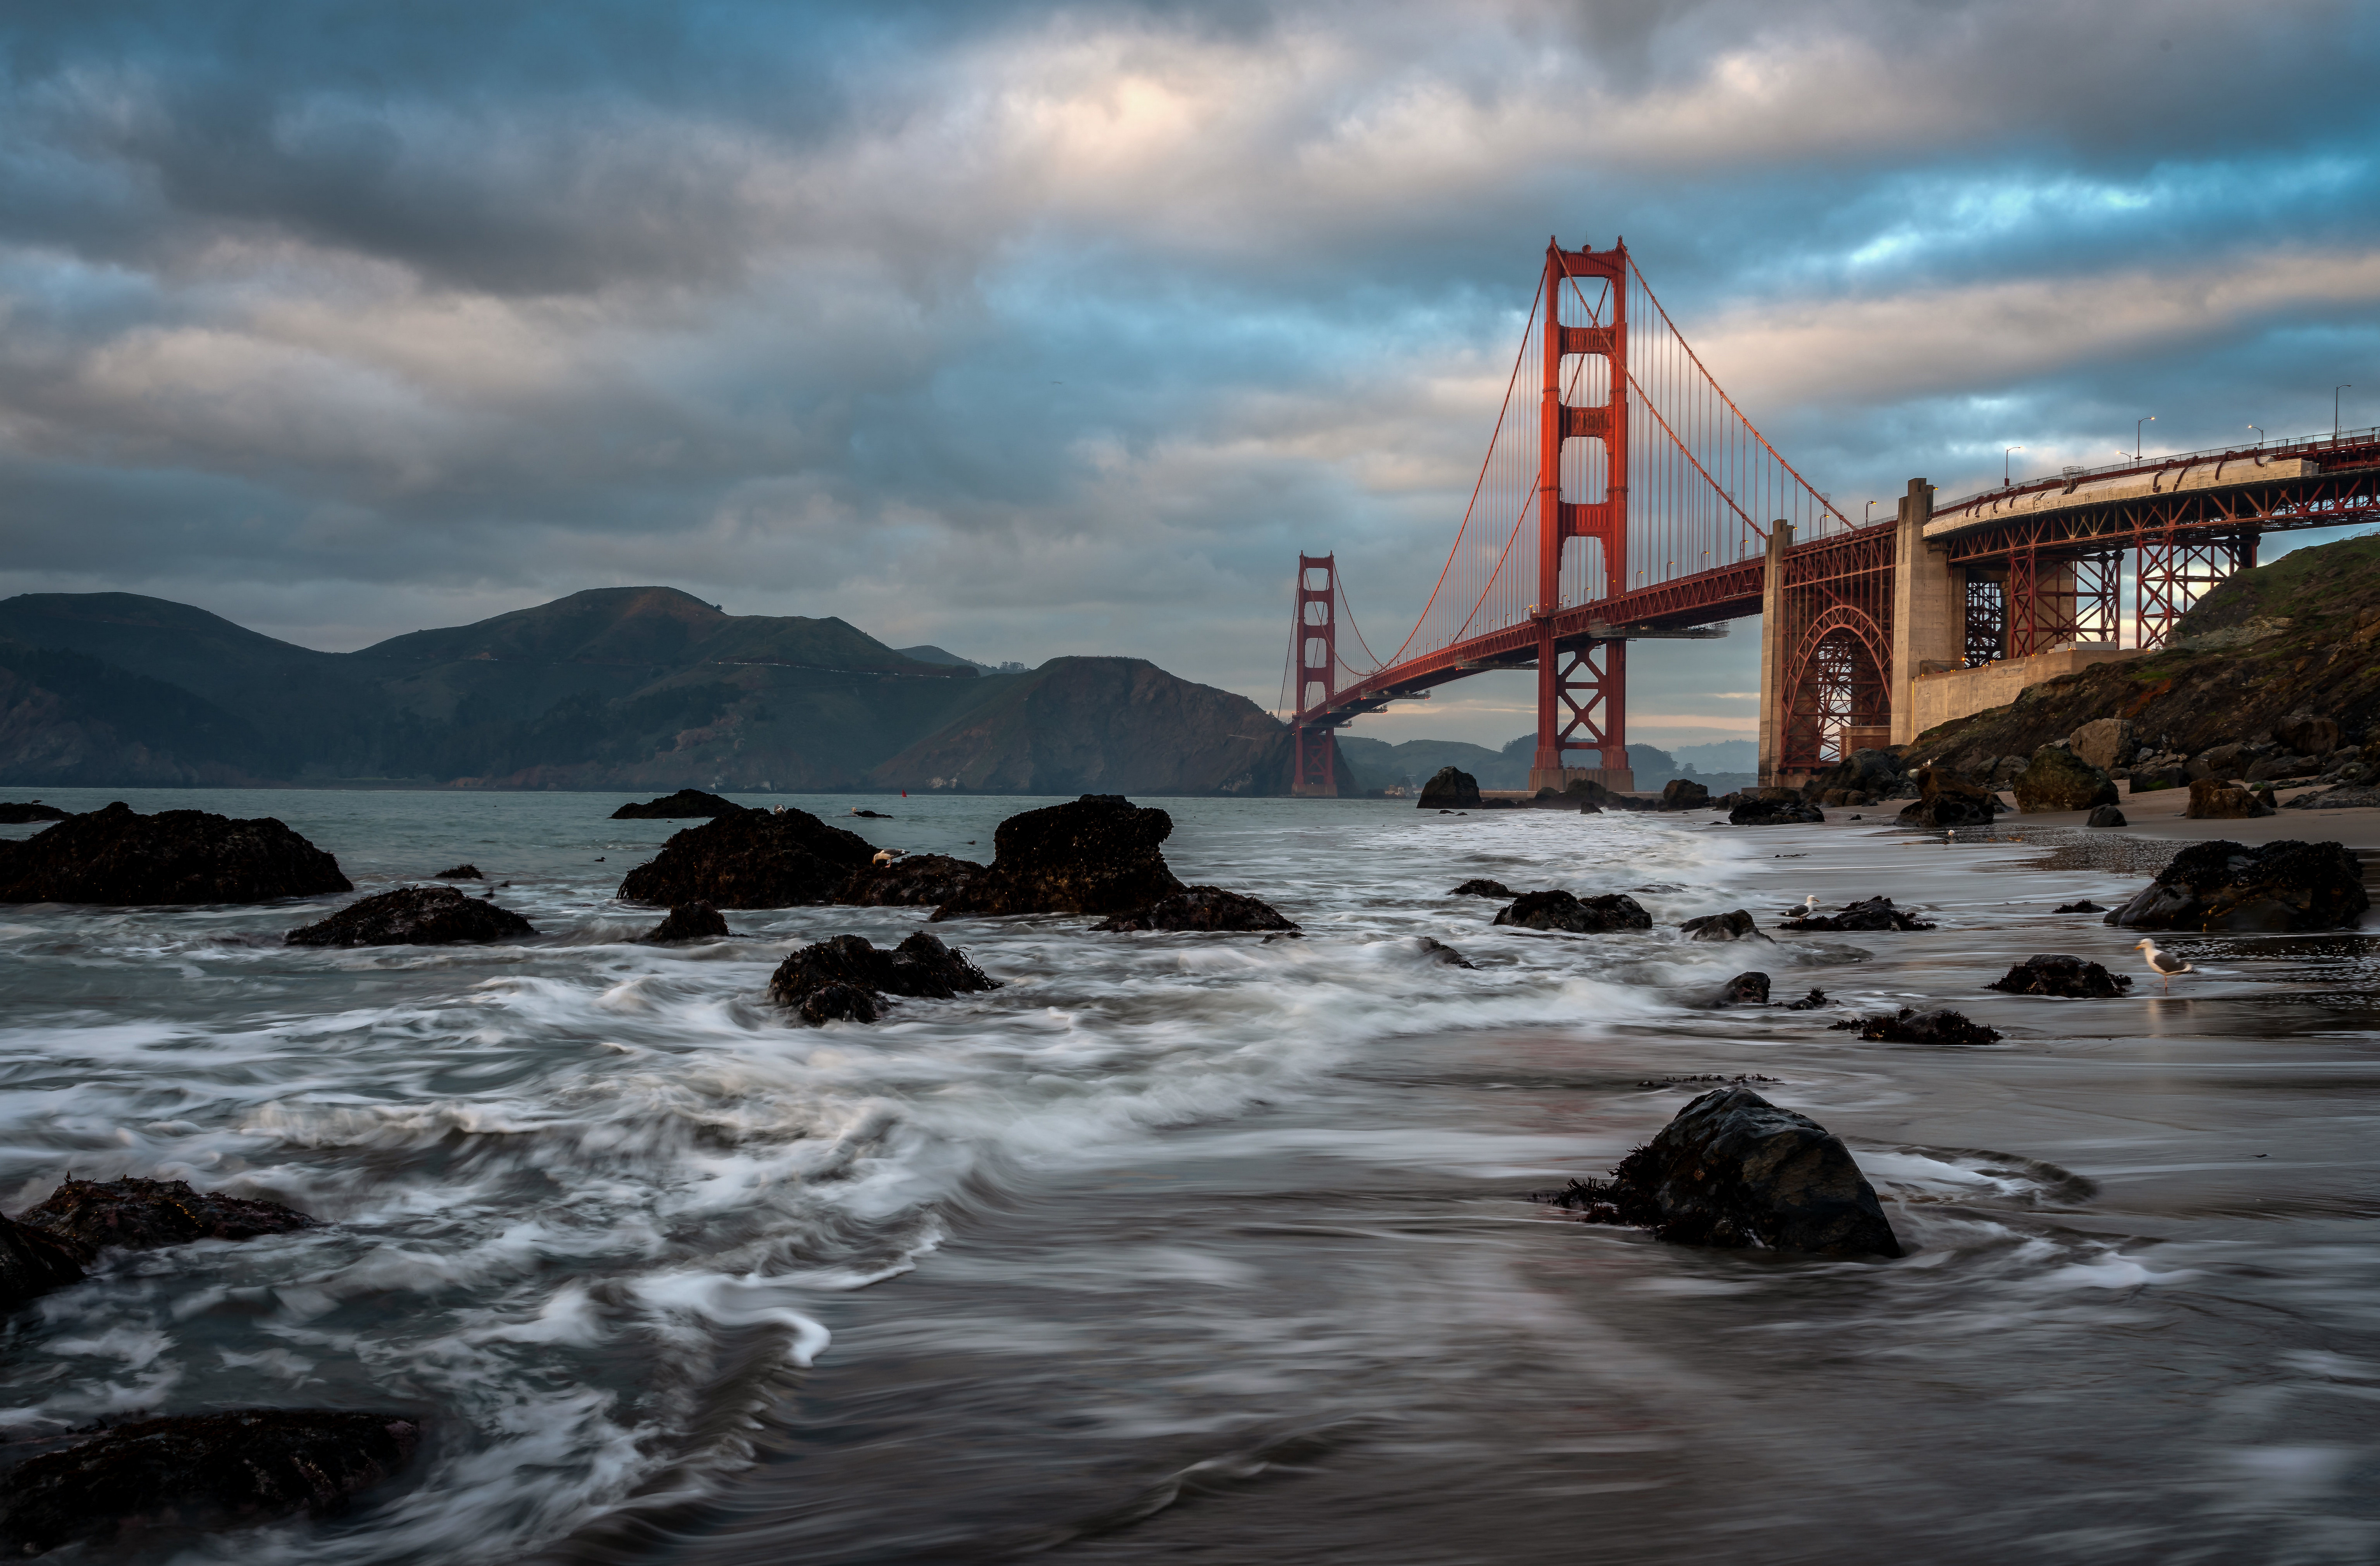 Golden Gate 4k Ultra HD Wallpaper